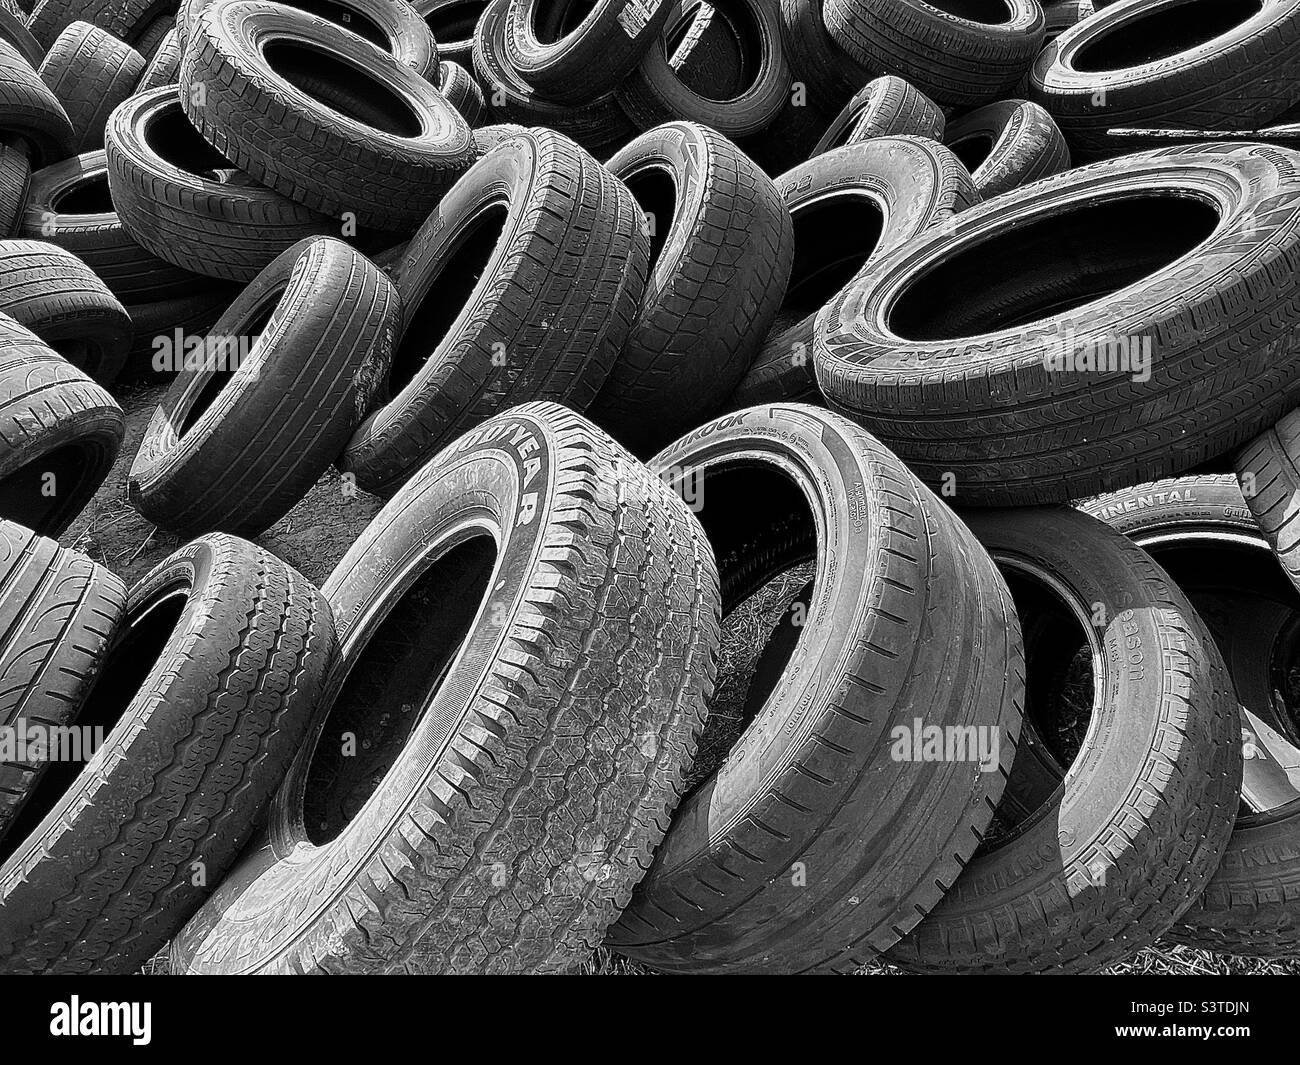 Ein Haufen alter und abgenutzter Reifen stapelte sich hinter einem Auto-/Reifenladen in Utah, USA. Die Entsättigung zu Schwarz und Weiß und das Hinzufügen von Kontrast ergibt eine interessante Zusammenfassung. Stockfoto